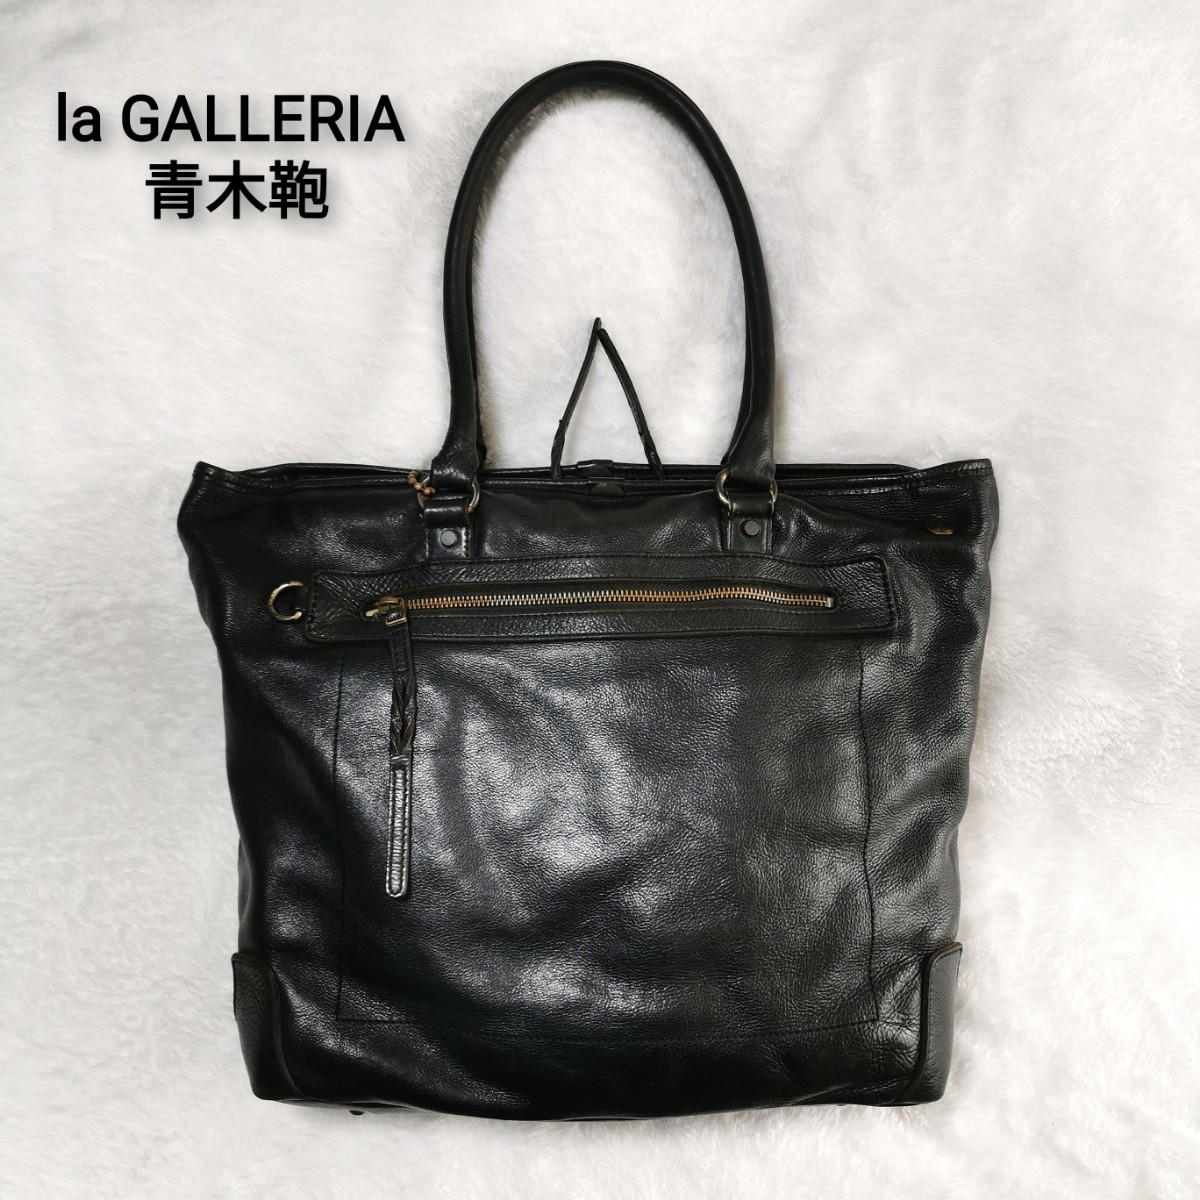 la GALLERIA(ラ・ガレリア) 青木鞄 肉厚 柔らか しなやか 牛革 本革レザー トートバッグ ビジネス カジュアル ブラック